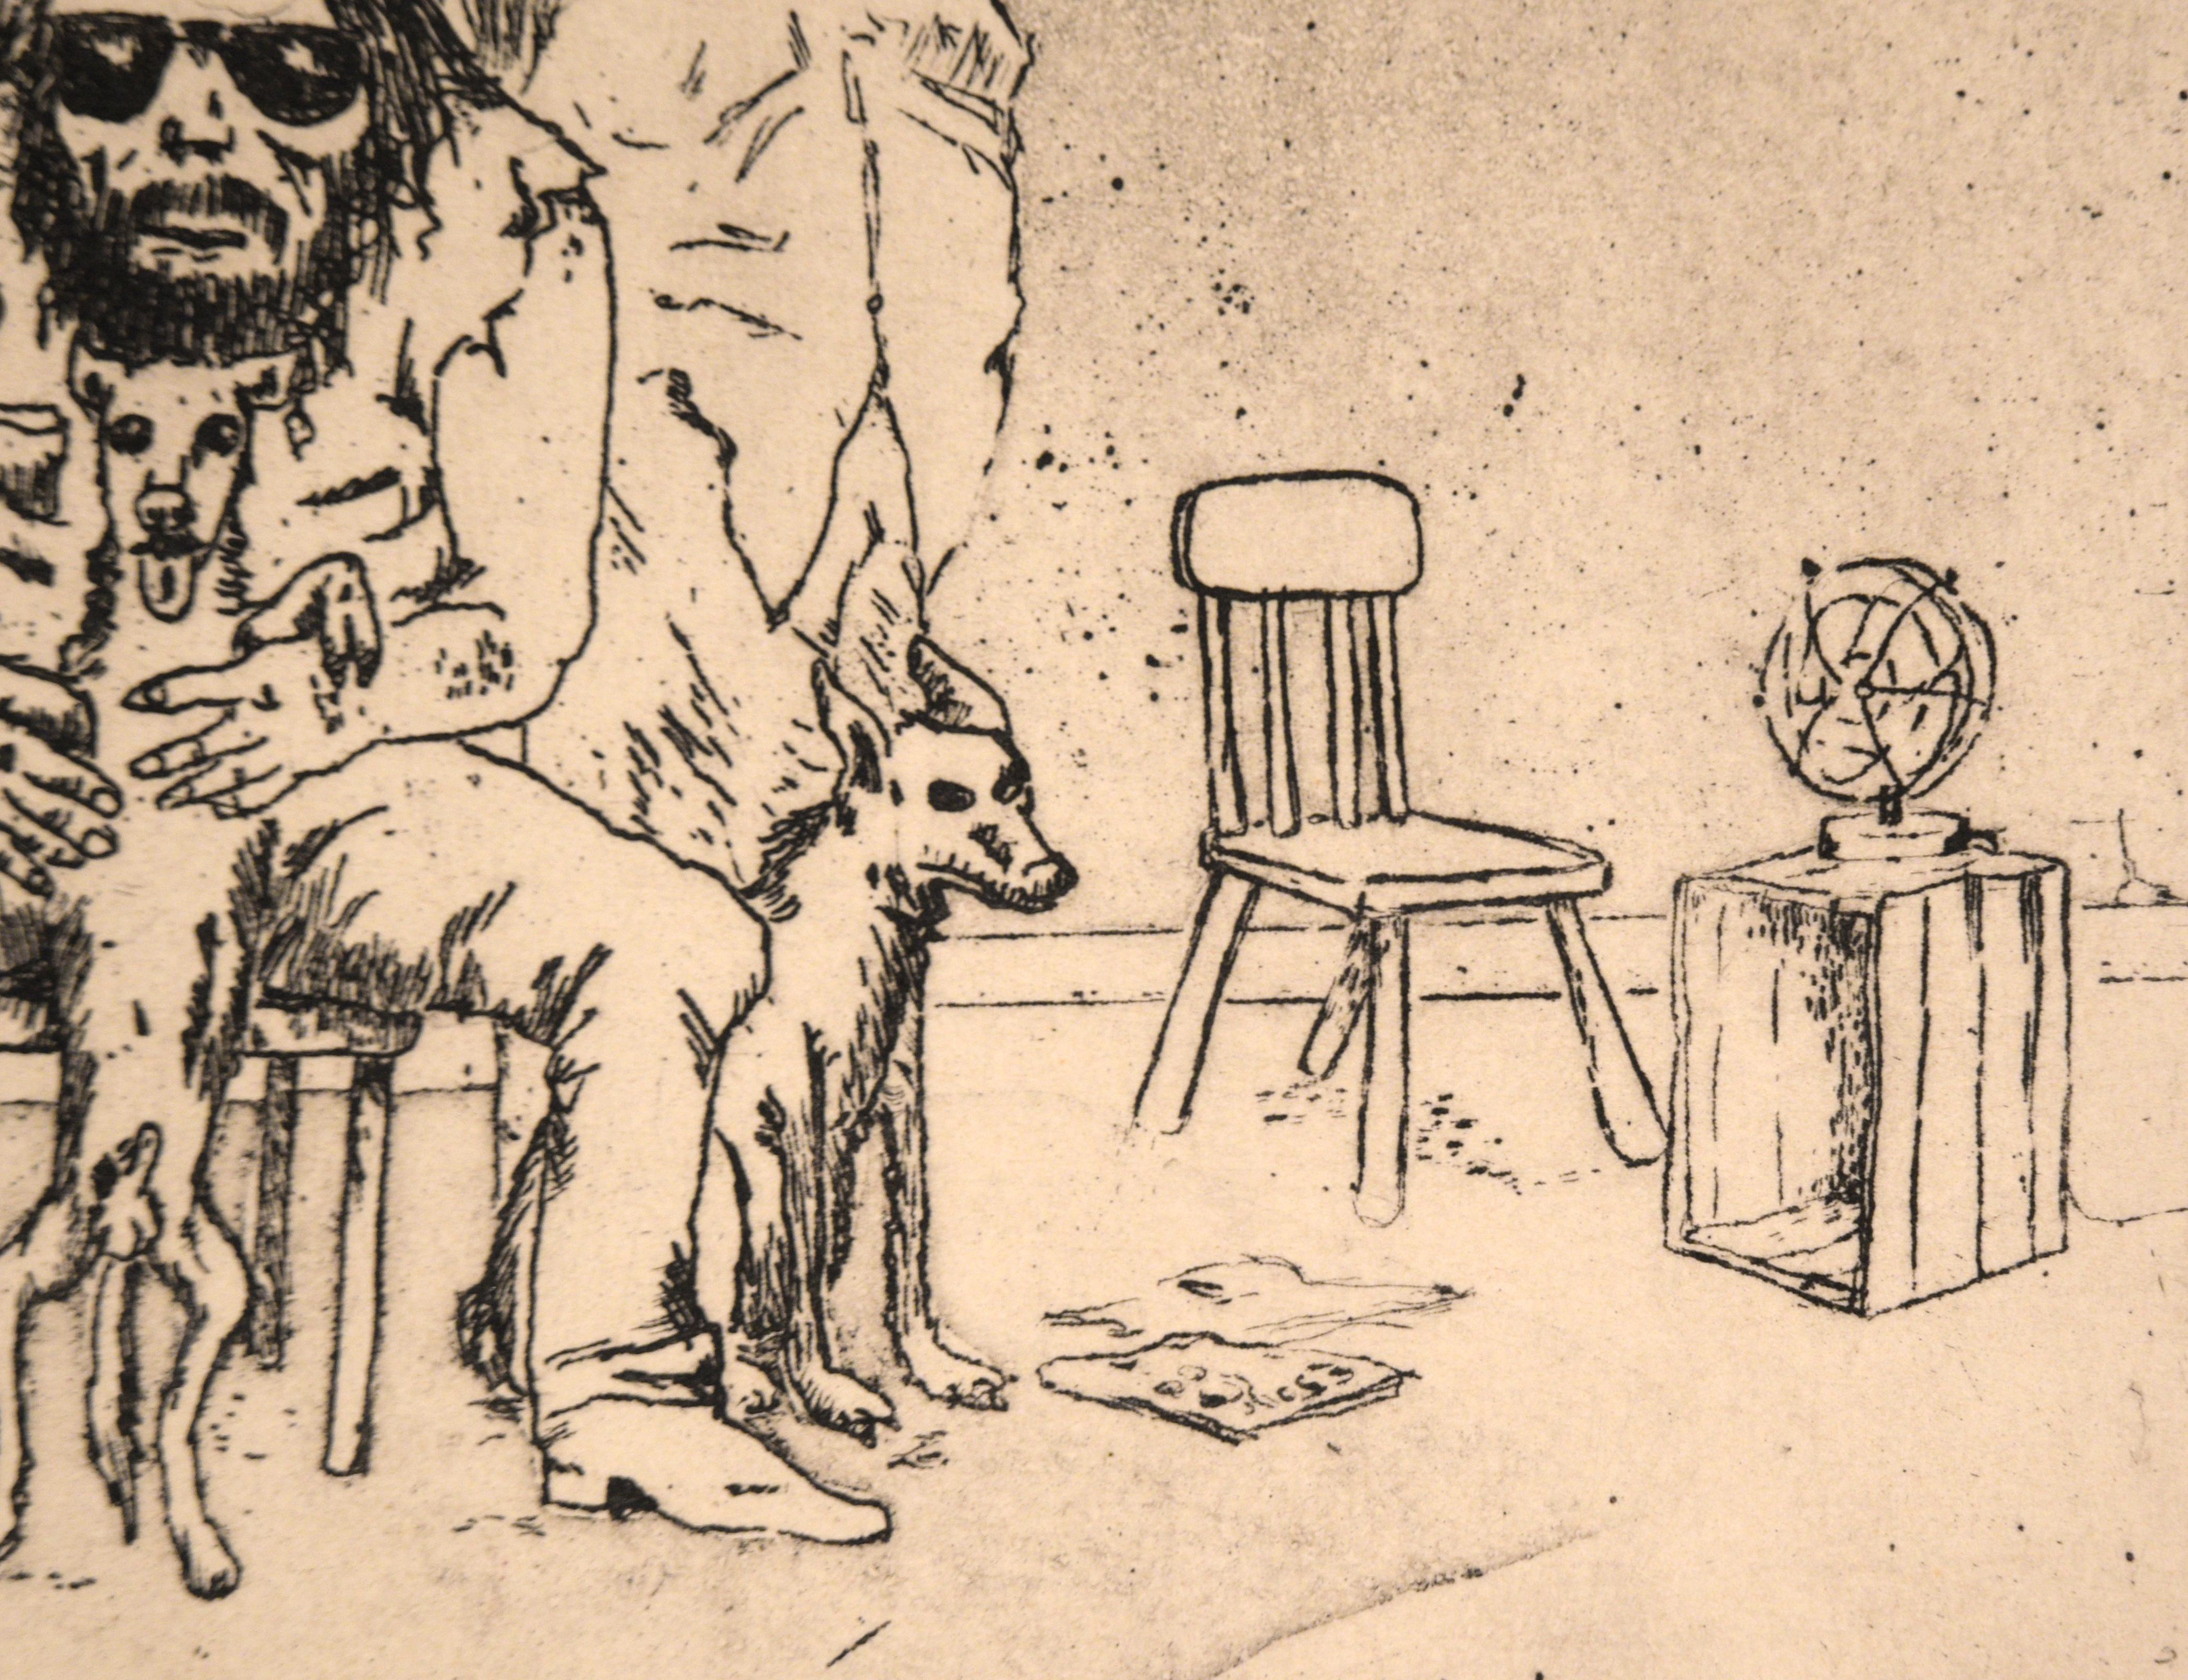 gravure moderniste des années 1970 représentant un homme et une femme à la maison avec leurs chiens, réalisée par Stephen Martin (américain, 20e siècle). Le couple énigmatique porte tous deux des lunettes de soleil à l'intérieur de l'espace